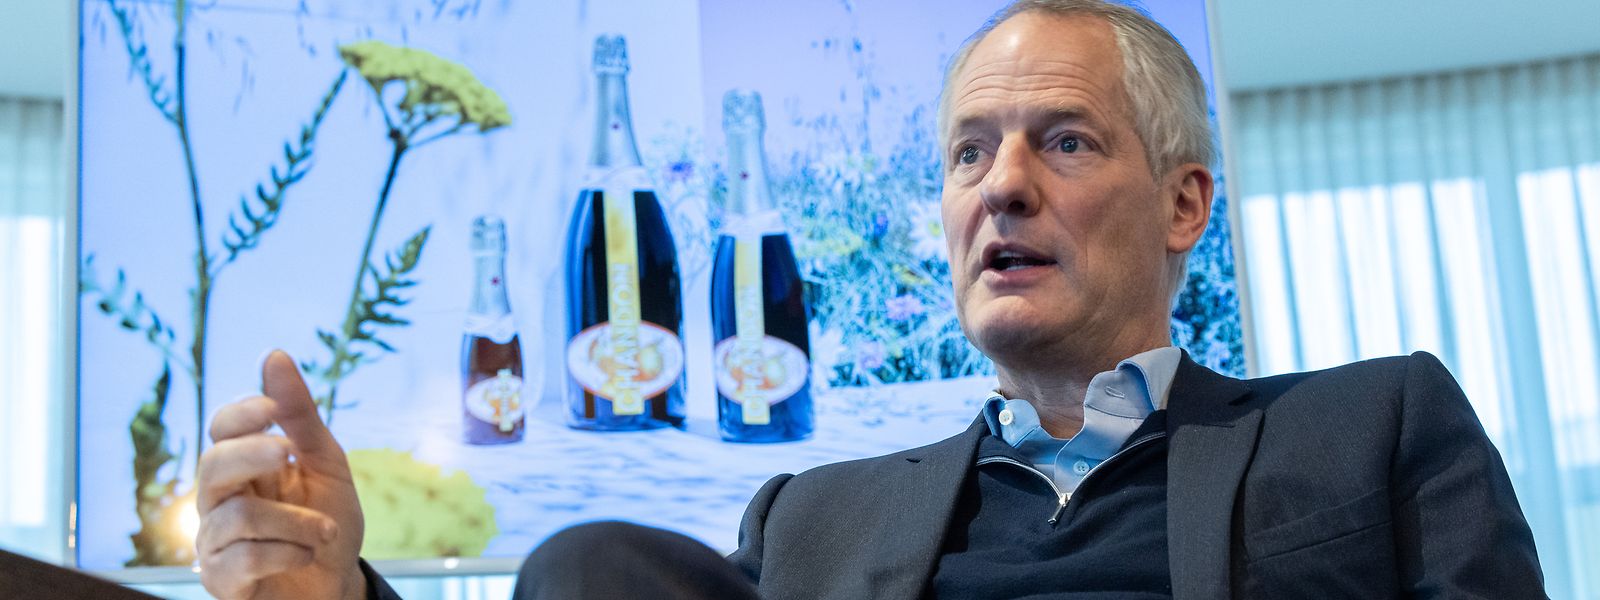 Depuis 2017, Philippe Schaus est président et directeur général exécutif de Moët Hennessy, la branche vins et spiritueux du groupe LVMH.